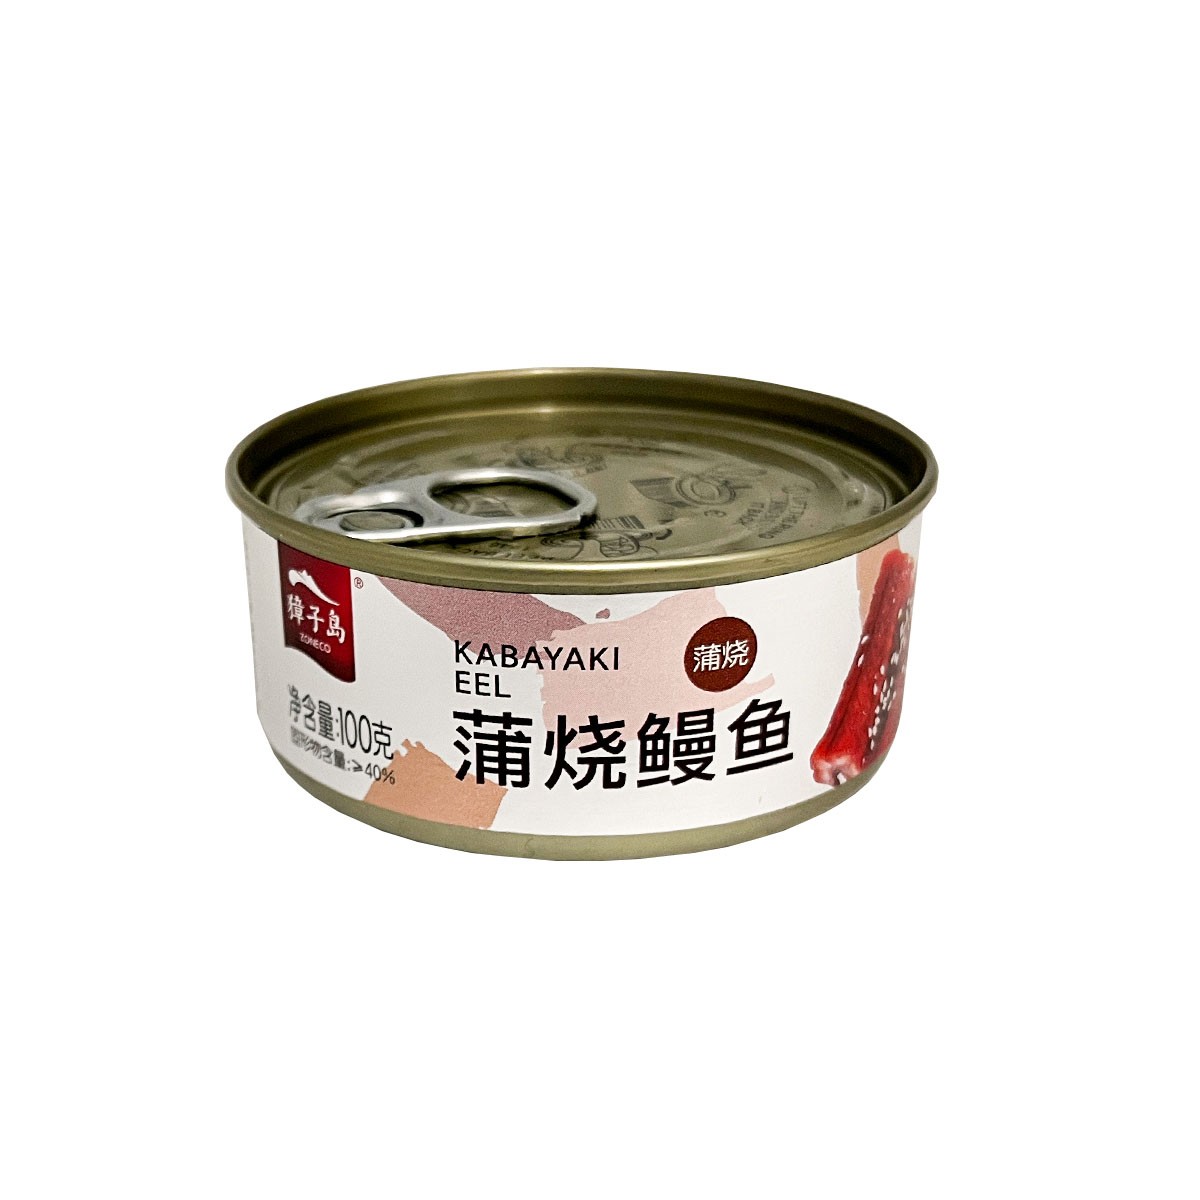 zoneco-canned-kabayaki-eel